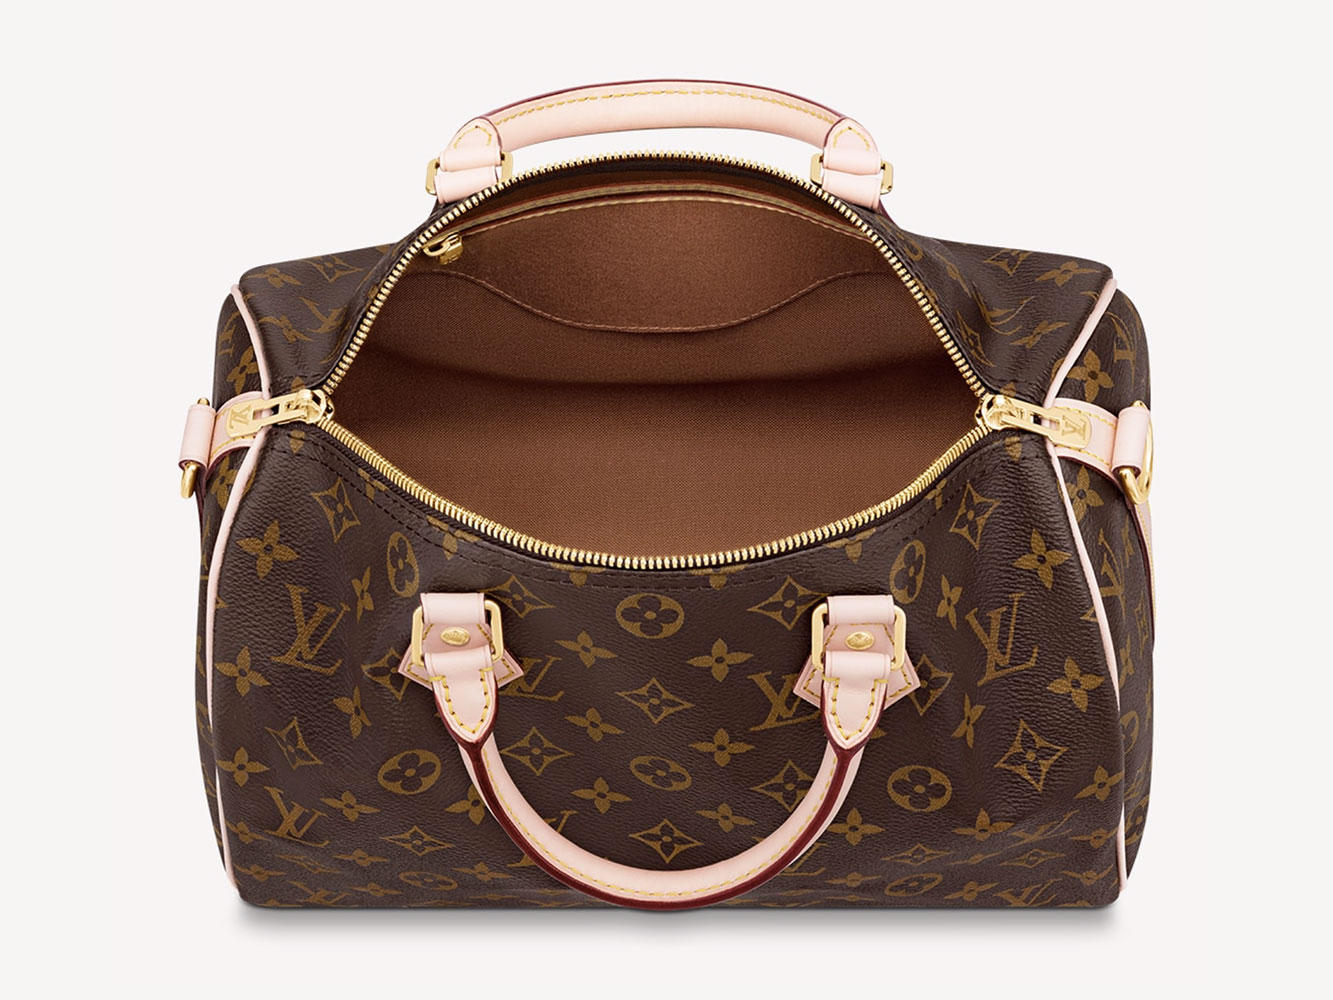 Tất cả những gì bạn cần biết về túi xách Louis Vuitton Speedy